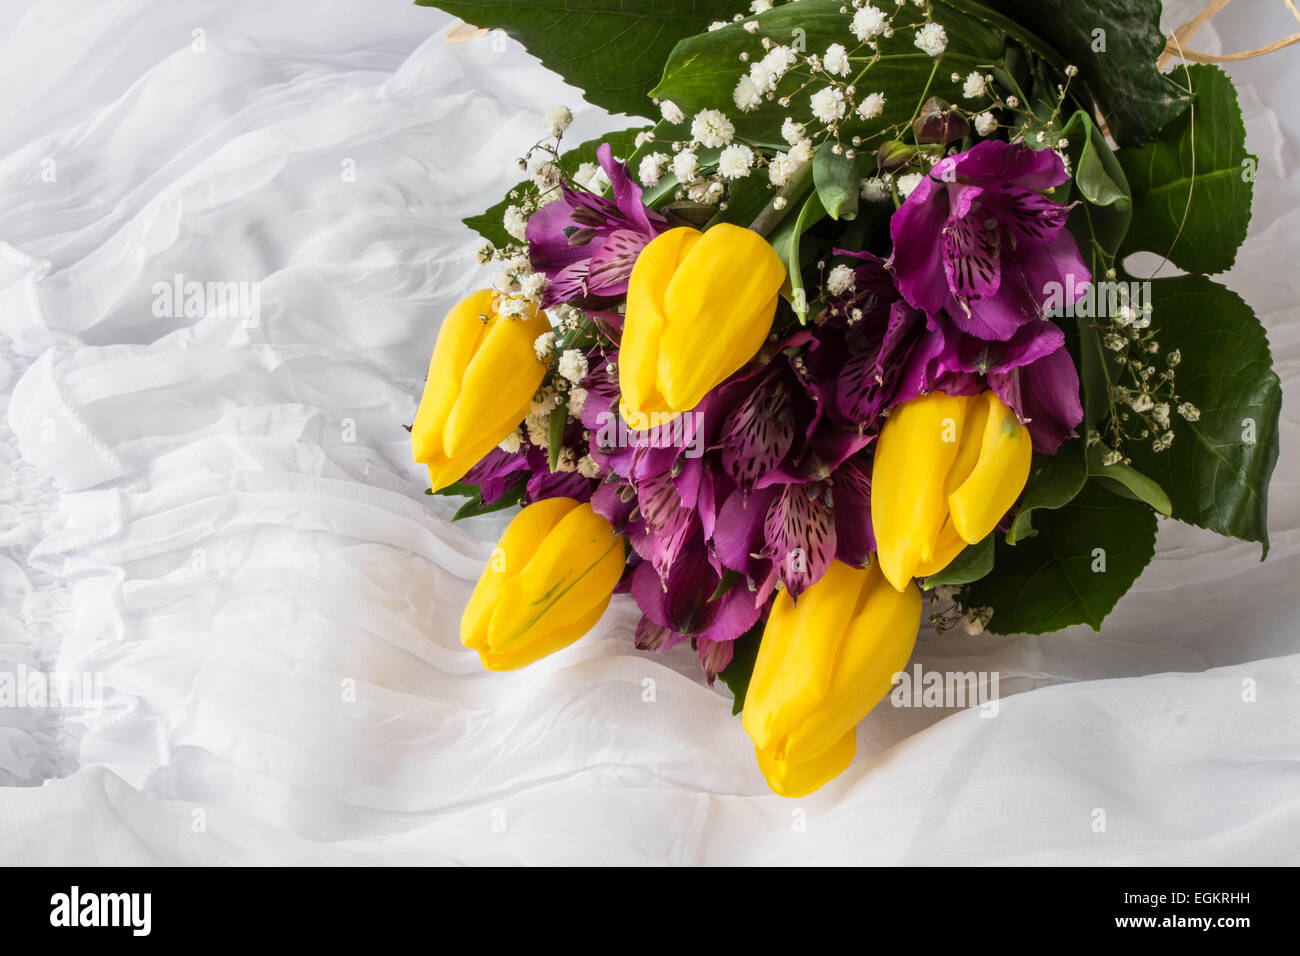 Fleurs de Printemps - tulipe jaune et violet (alstroemeria lis des Incas du Pérou ou lily) - Fond blanc Banque D'Images